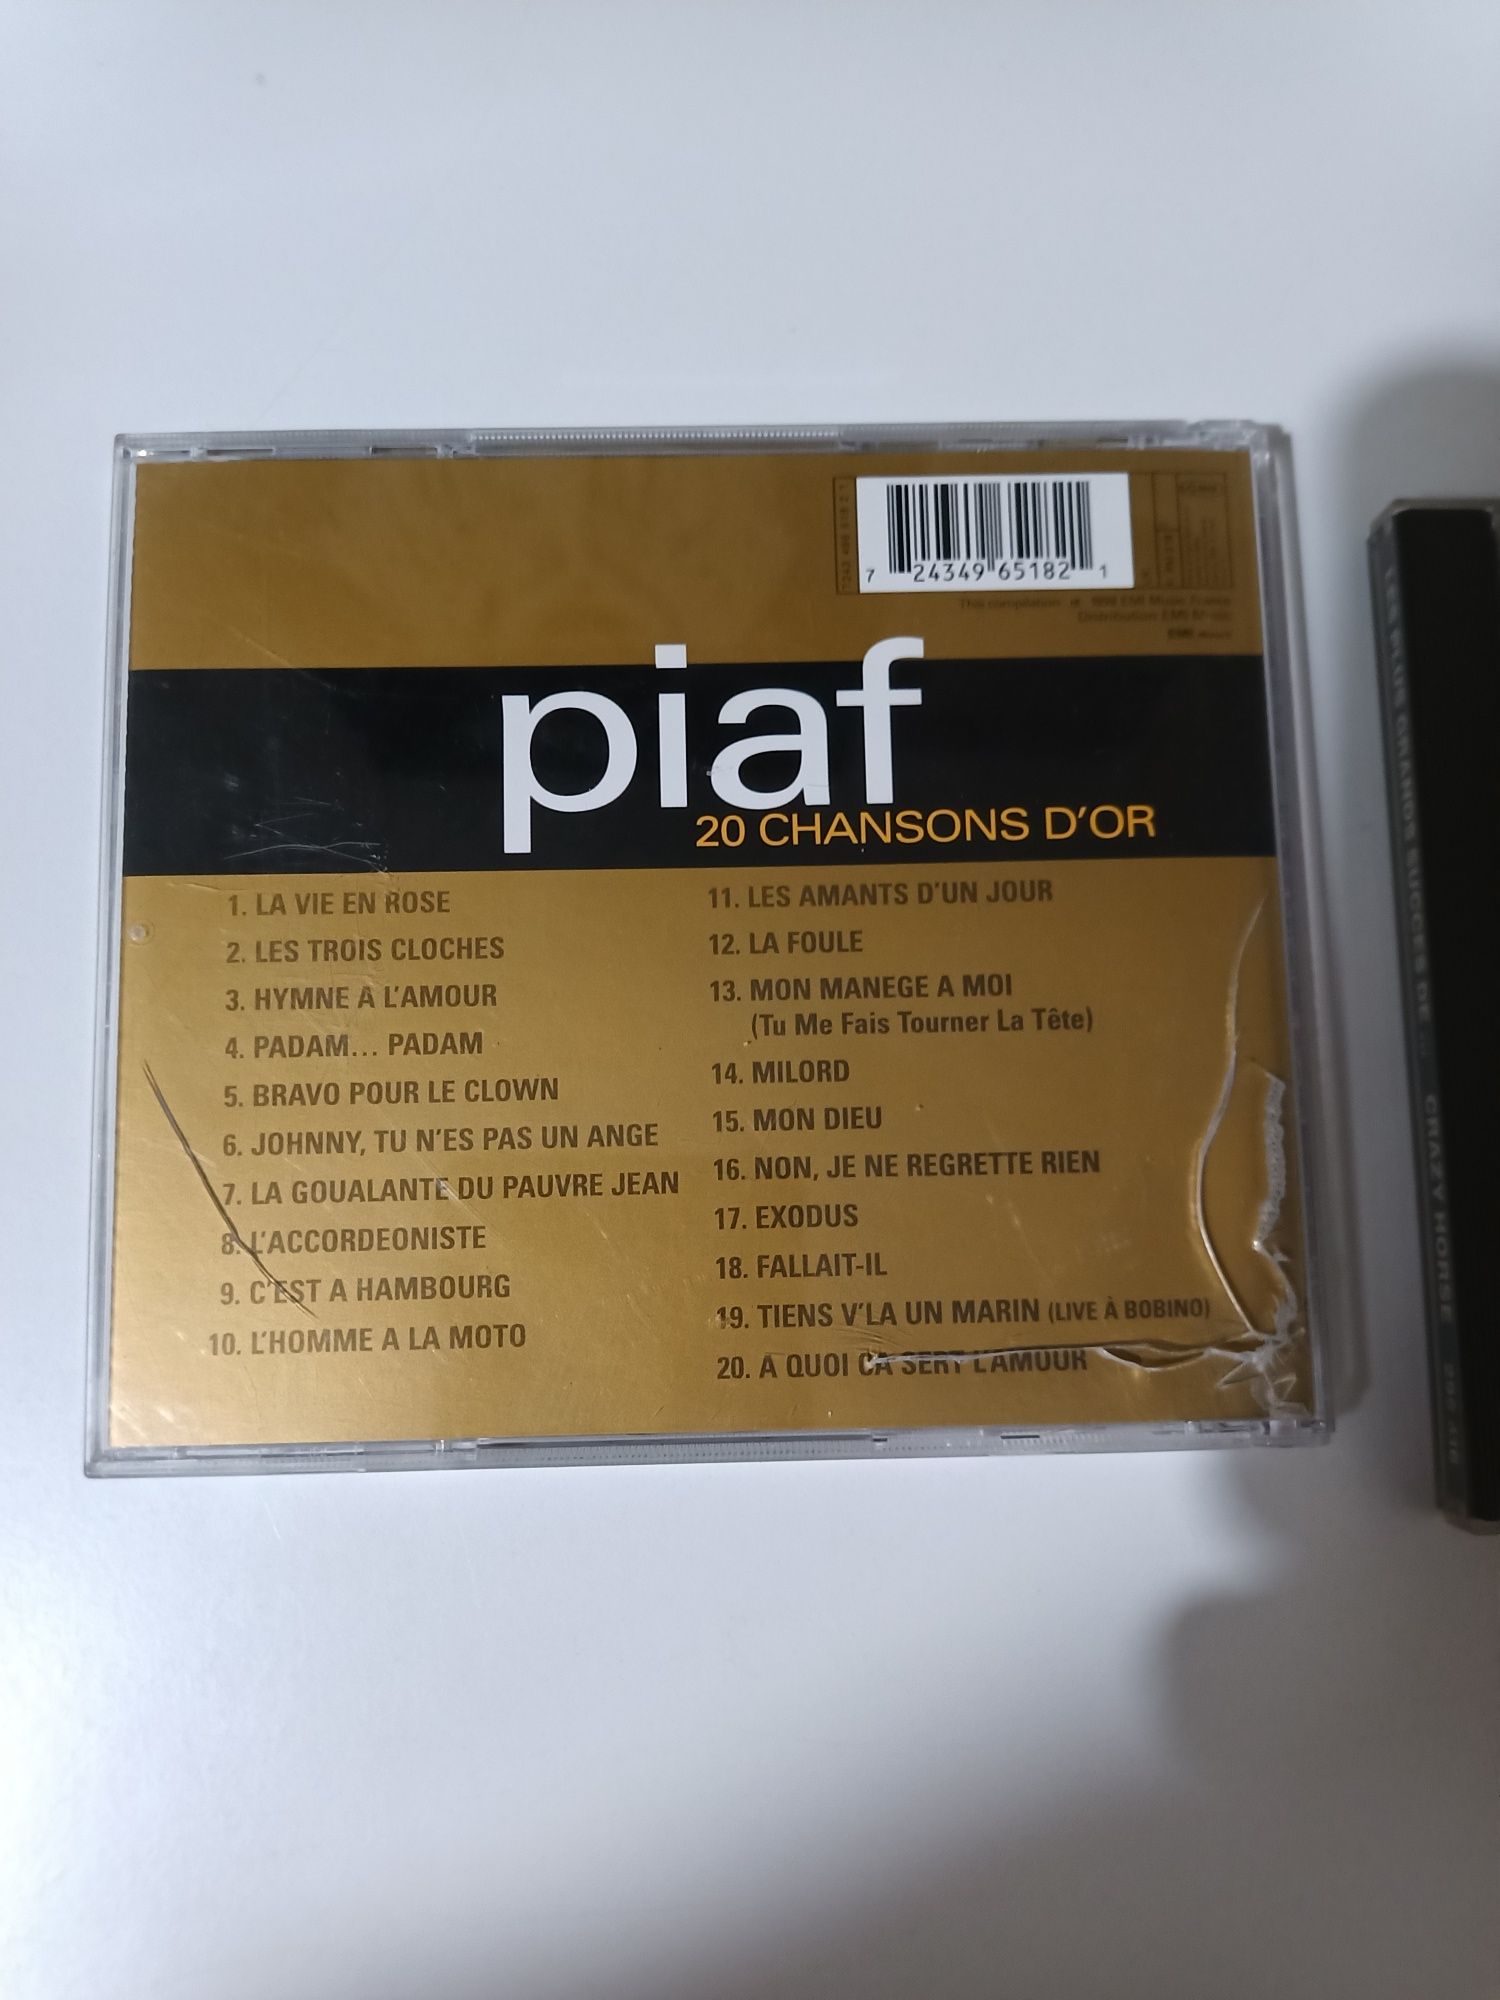 19 płyt CD z muzyką - Edith Piaf, Rod Stewart i inni